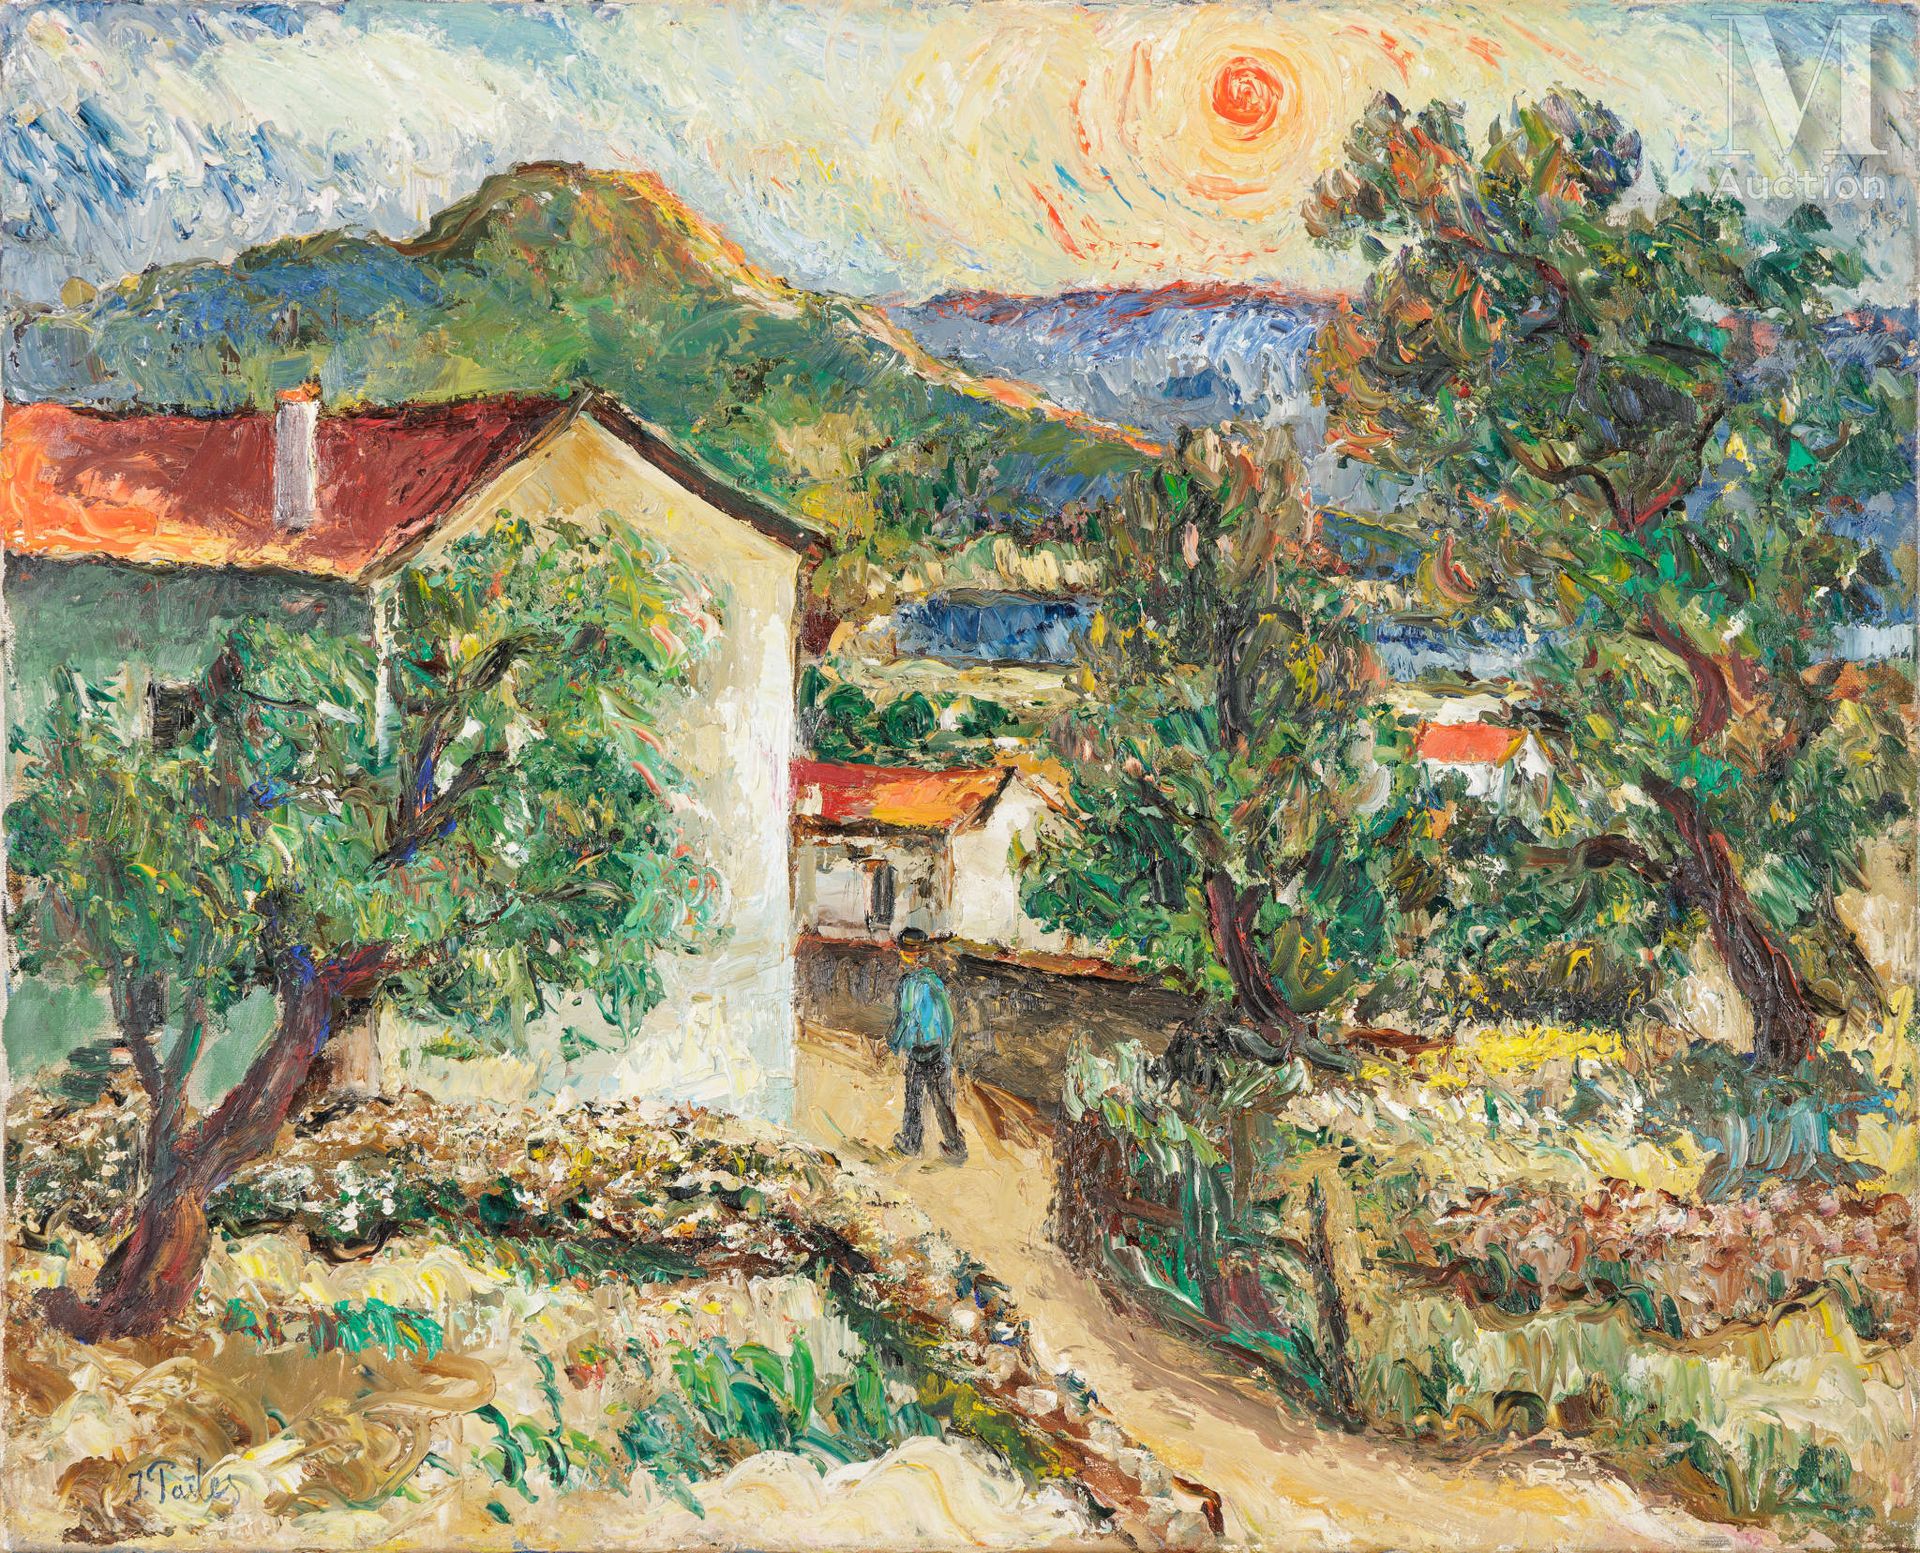 Isaac PAÏLES (Kiev 1895-France 1978) 法国南部的景观

布面油画
65 x 81 cm
左下角签有 "I.父辈们"。

展览&hellip;